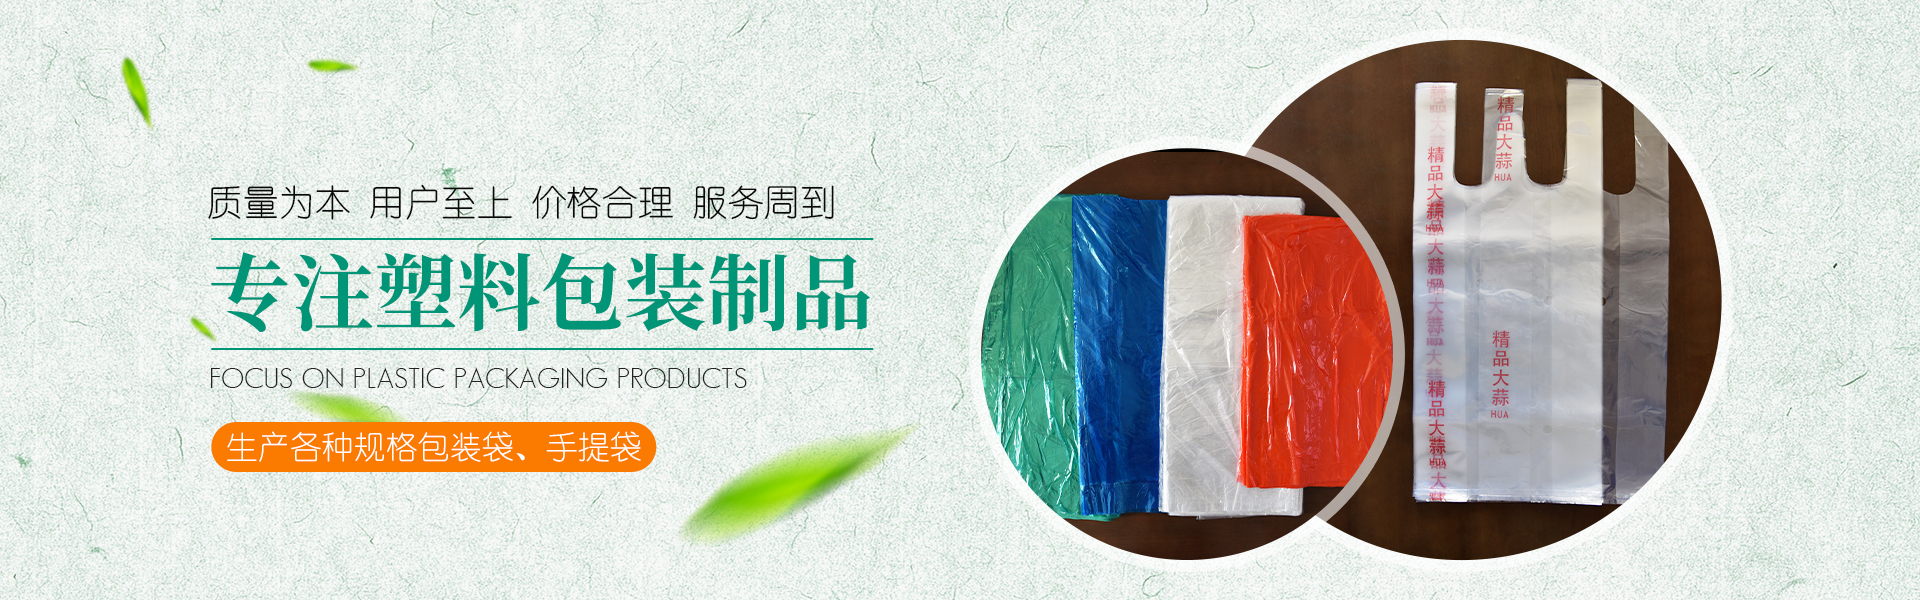 青州市金海源塑料包裝◈制◈品有限公司